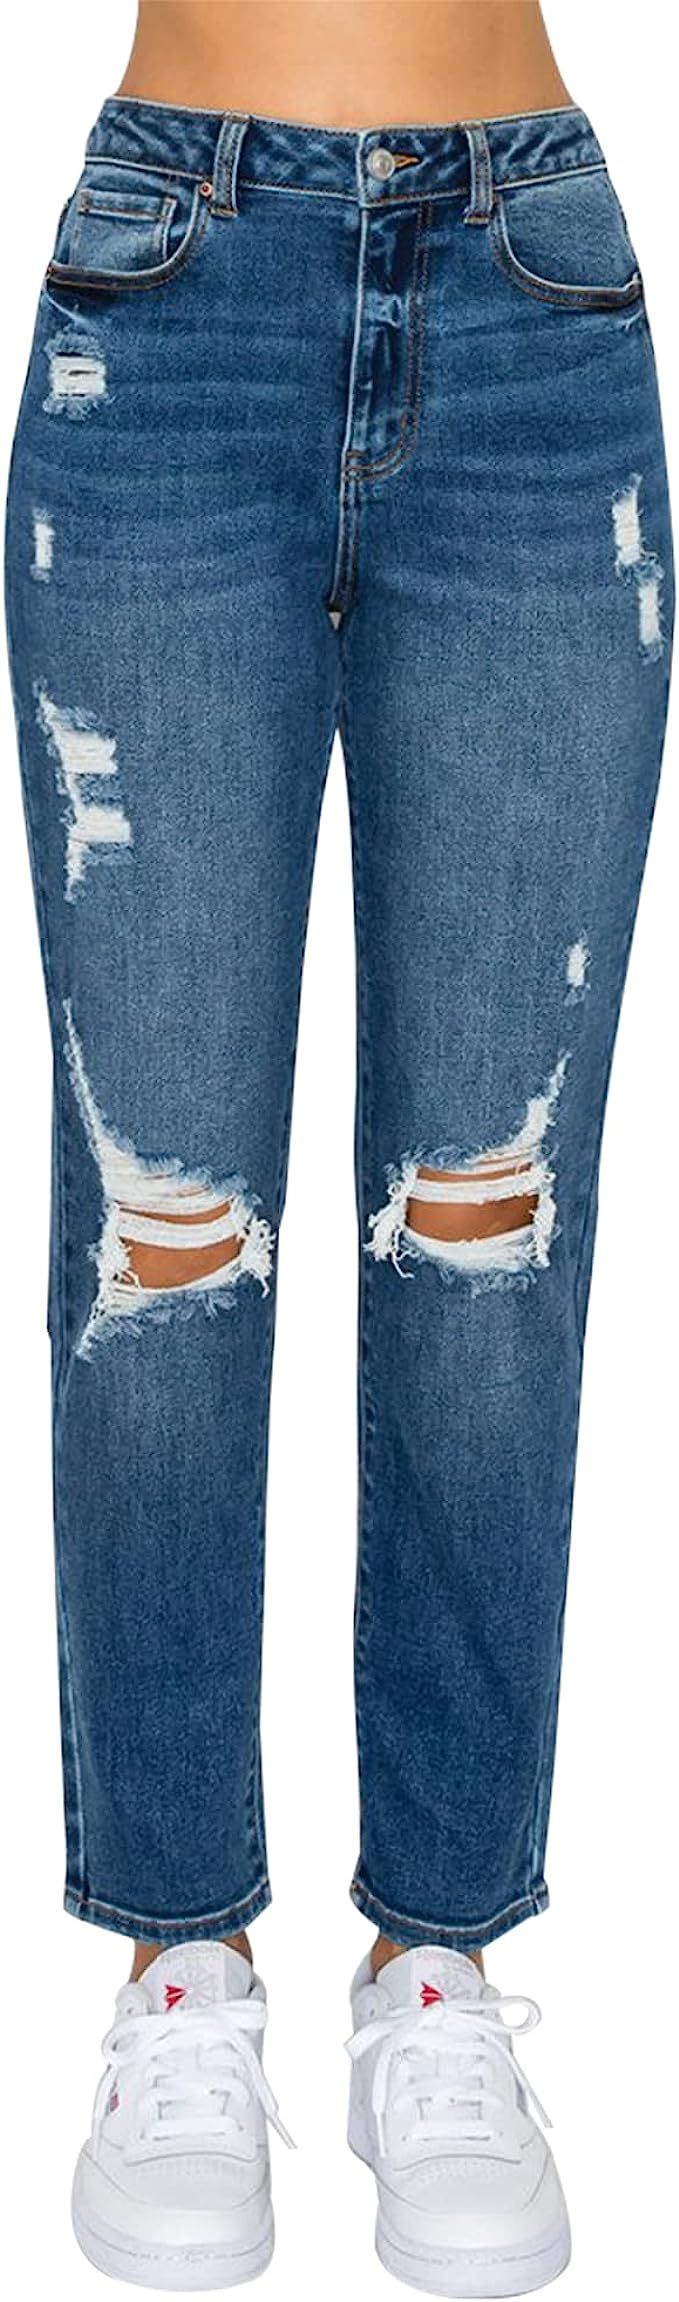 Little Vintage Girls Distressed Ripped Jeans for Women high Waist mom Jeans Boyfriend Jean,Wax Je... | Amazon (US)